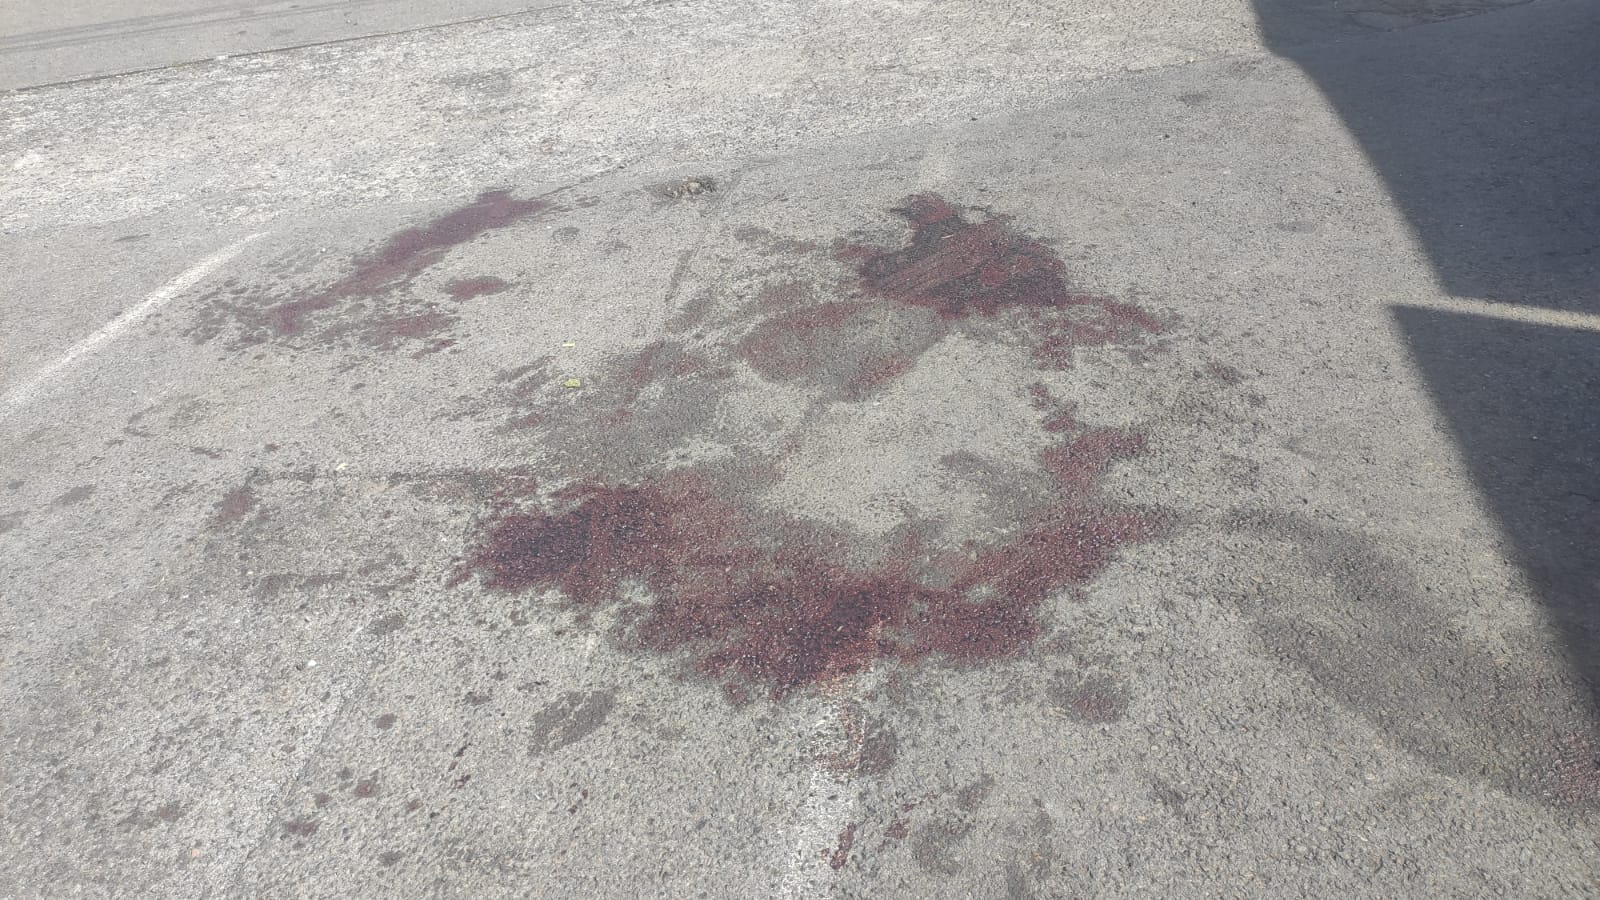 Les traces de sang sont encore visibles ce vendredi matin sur le parking où la rencontre entre les deux hommes s'est faite